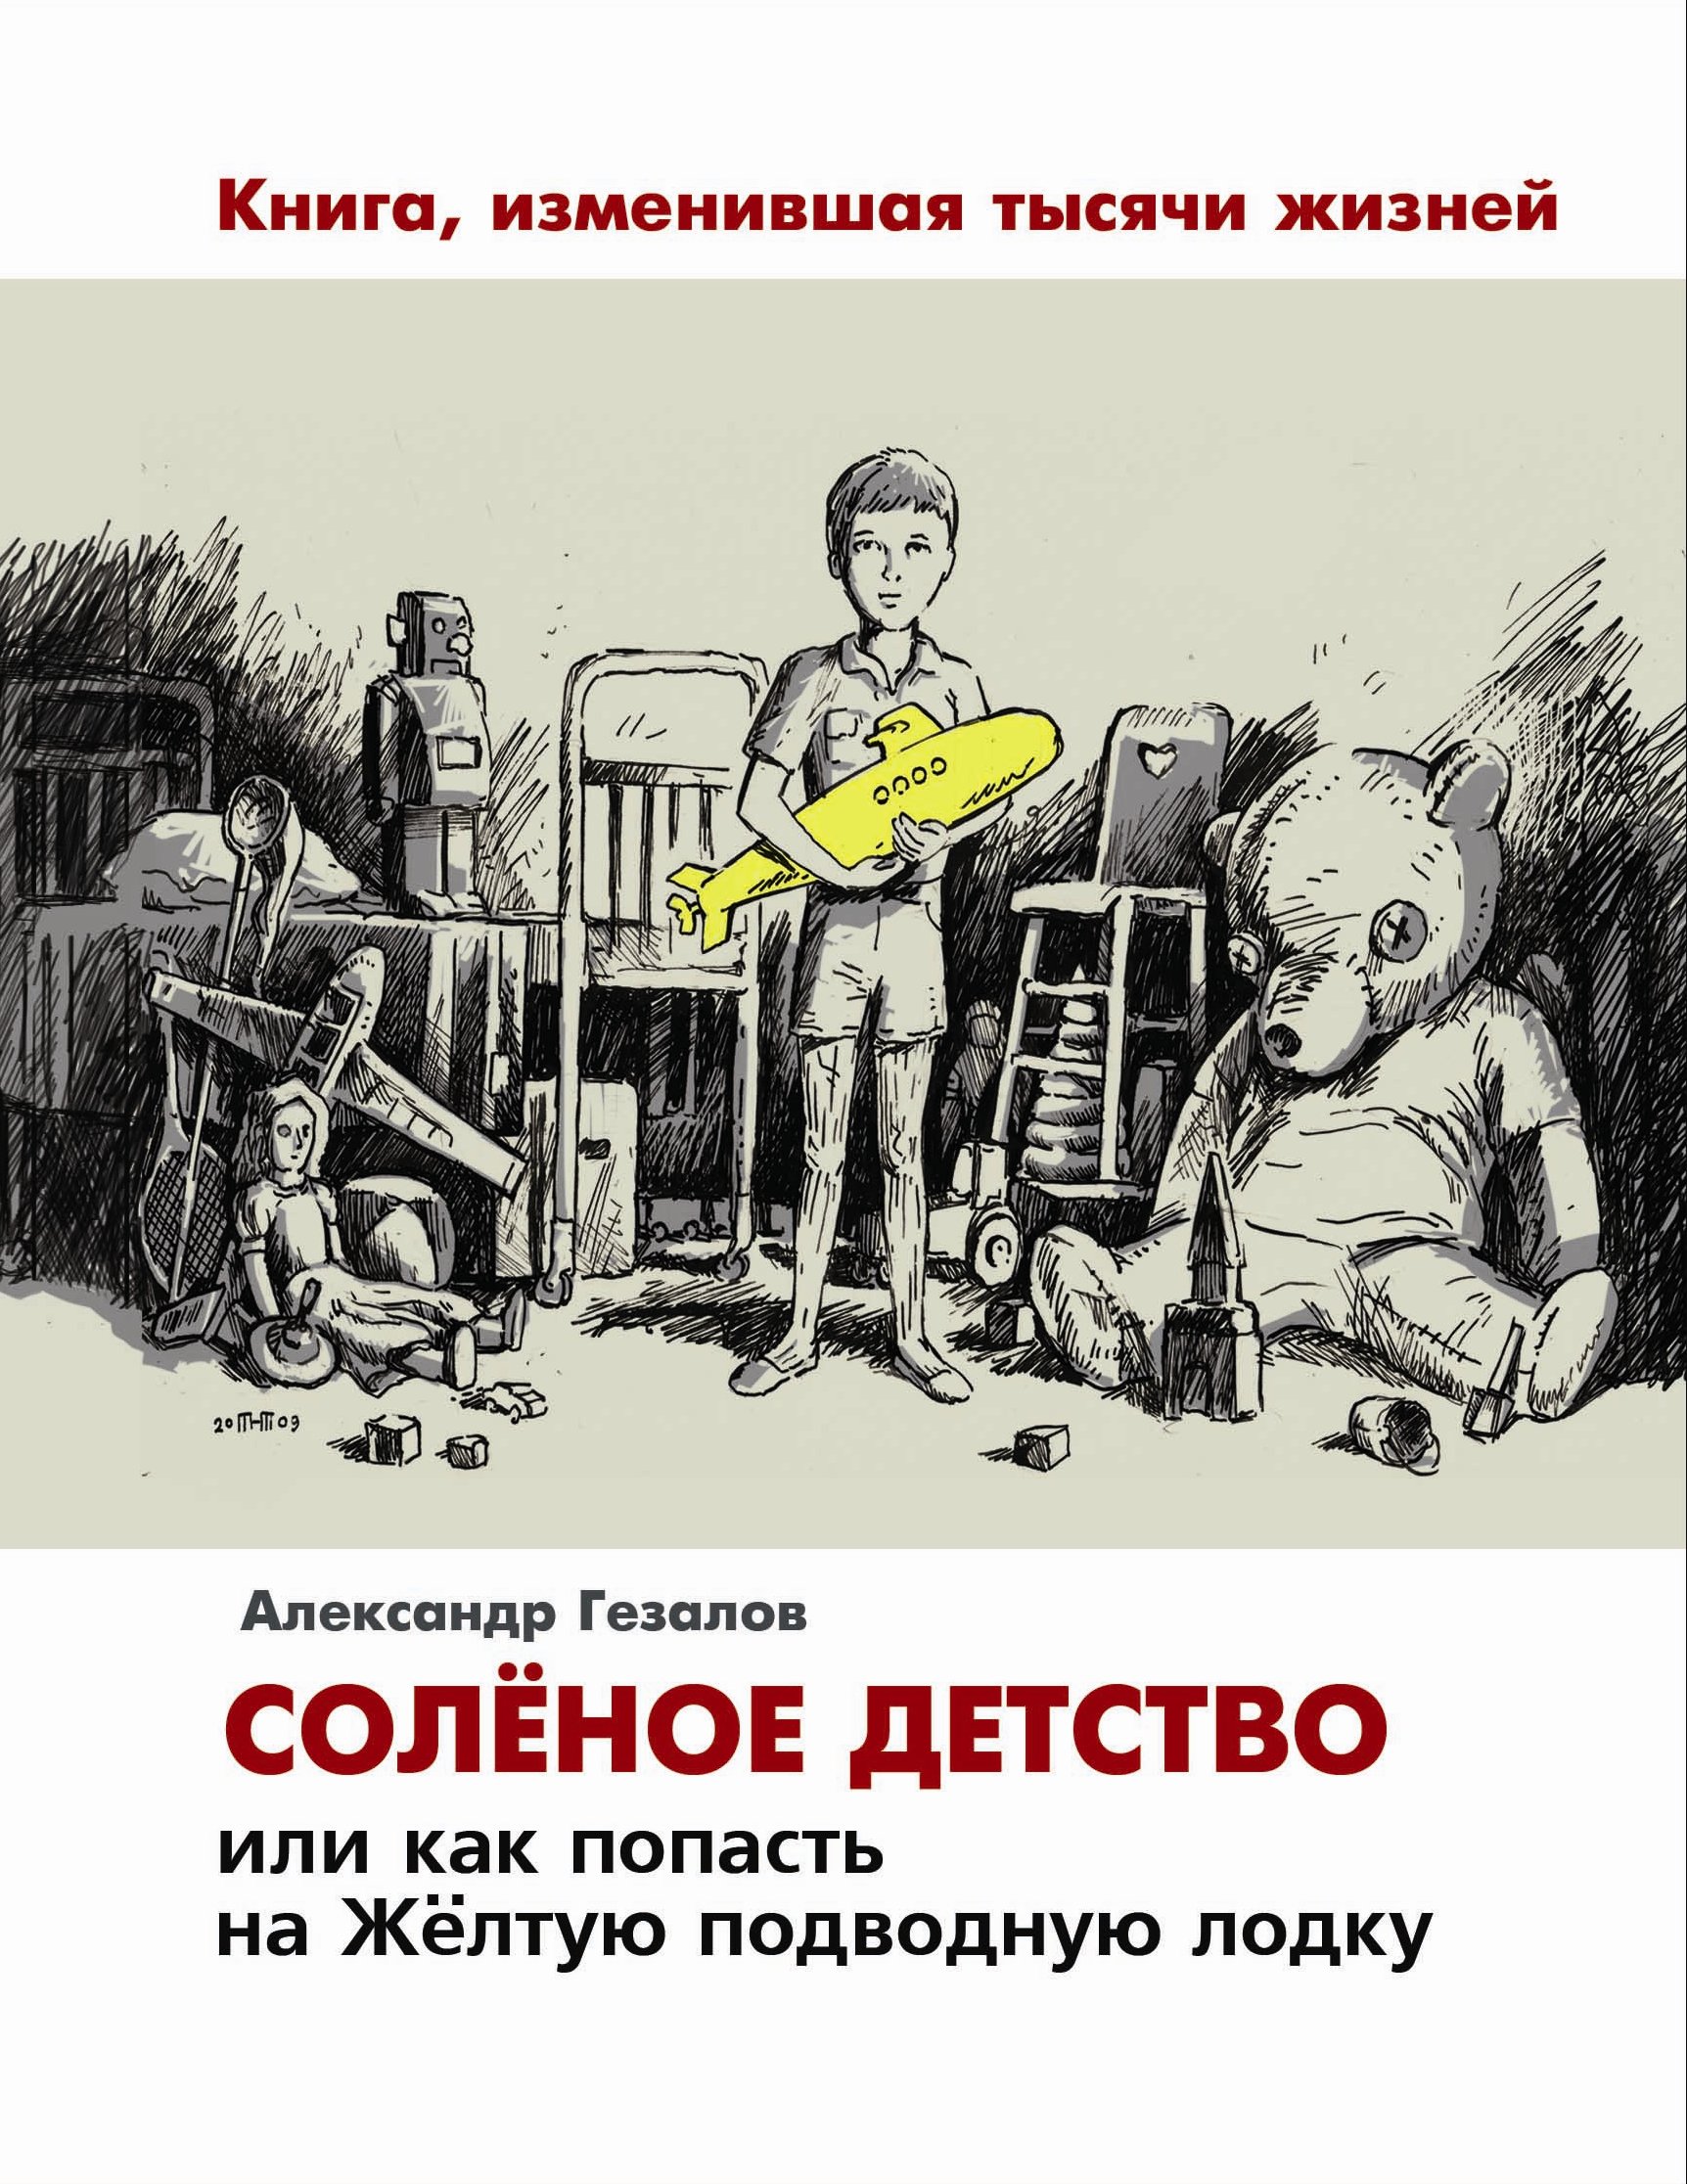 Книга Александра Гезалова "Соленое детство" выйдет в издательстве "Филарет"